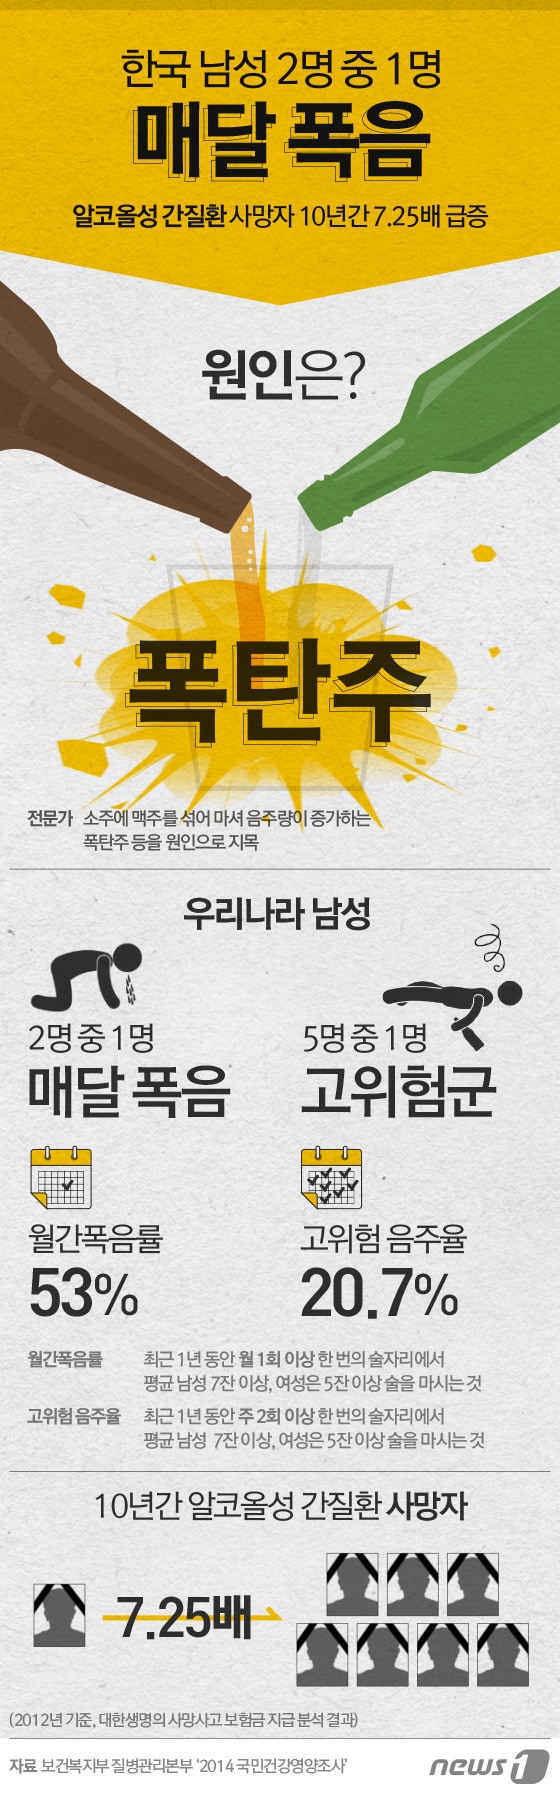 [그래픽뉴스] 한국 남성 2명 중 1명 매달 폭음